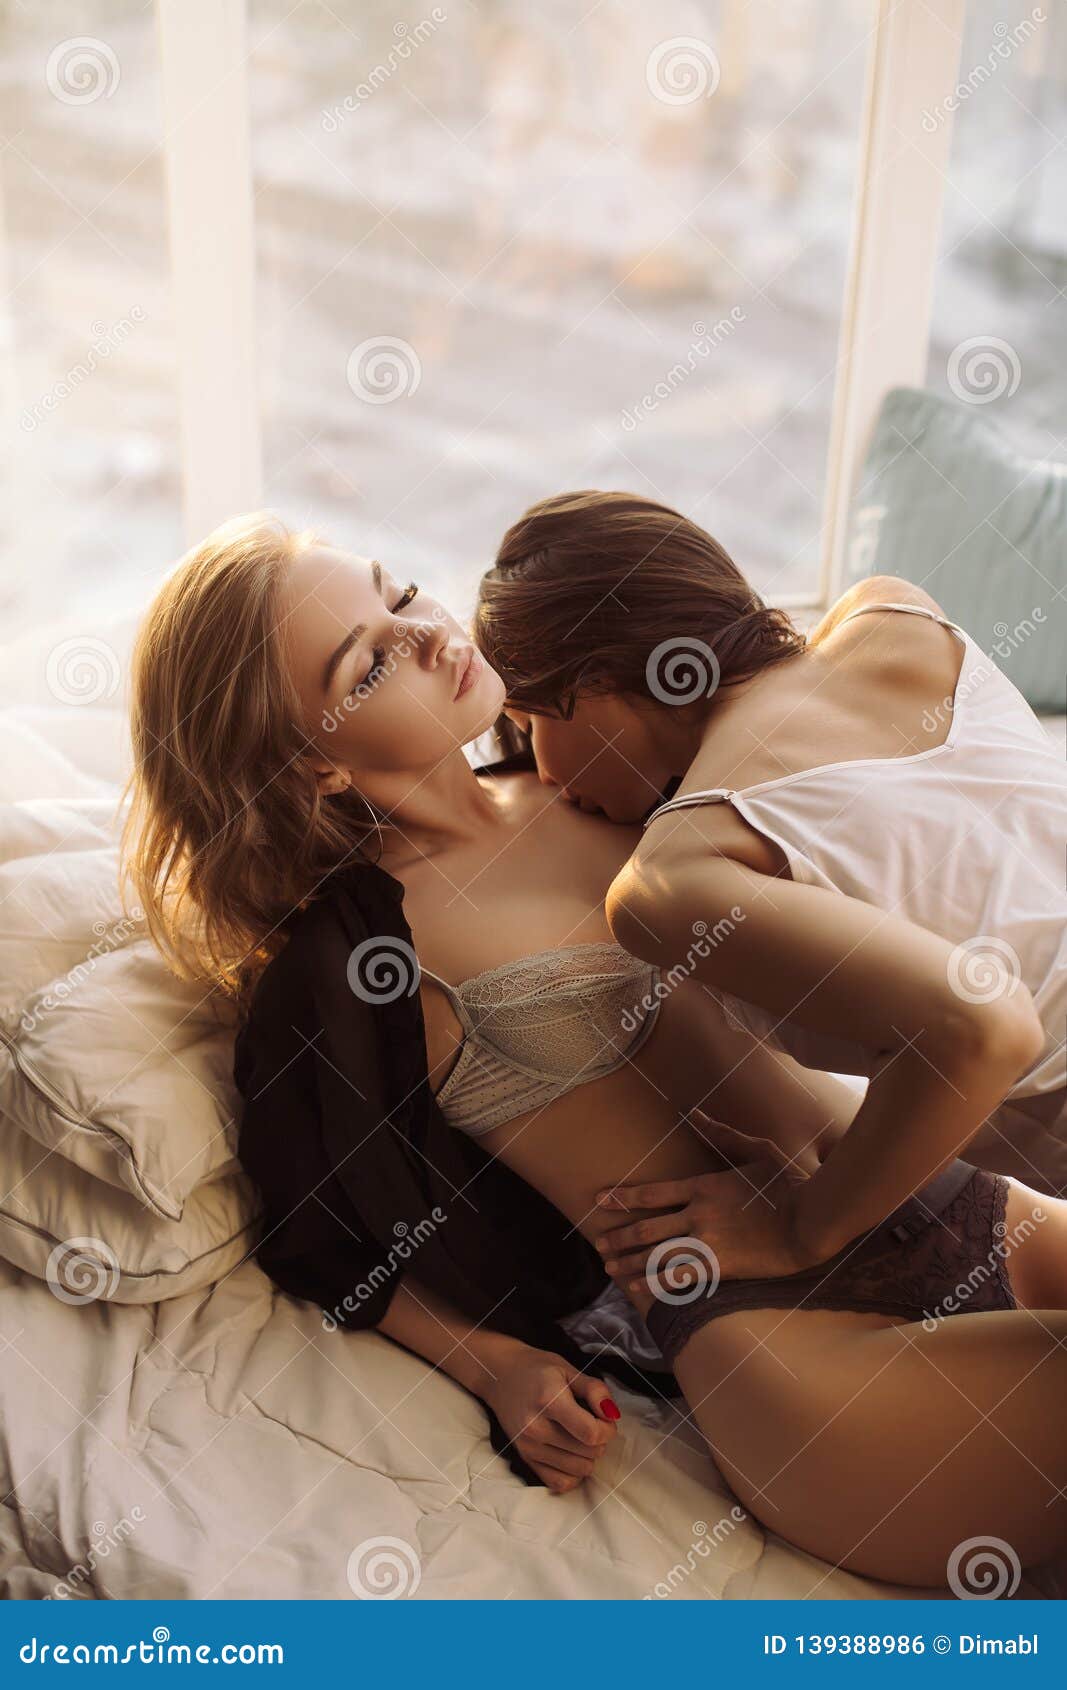 Lesbian kissing in lingerie